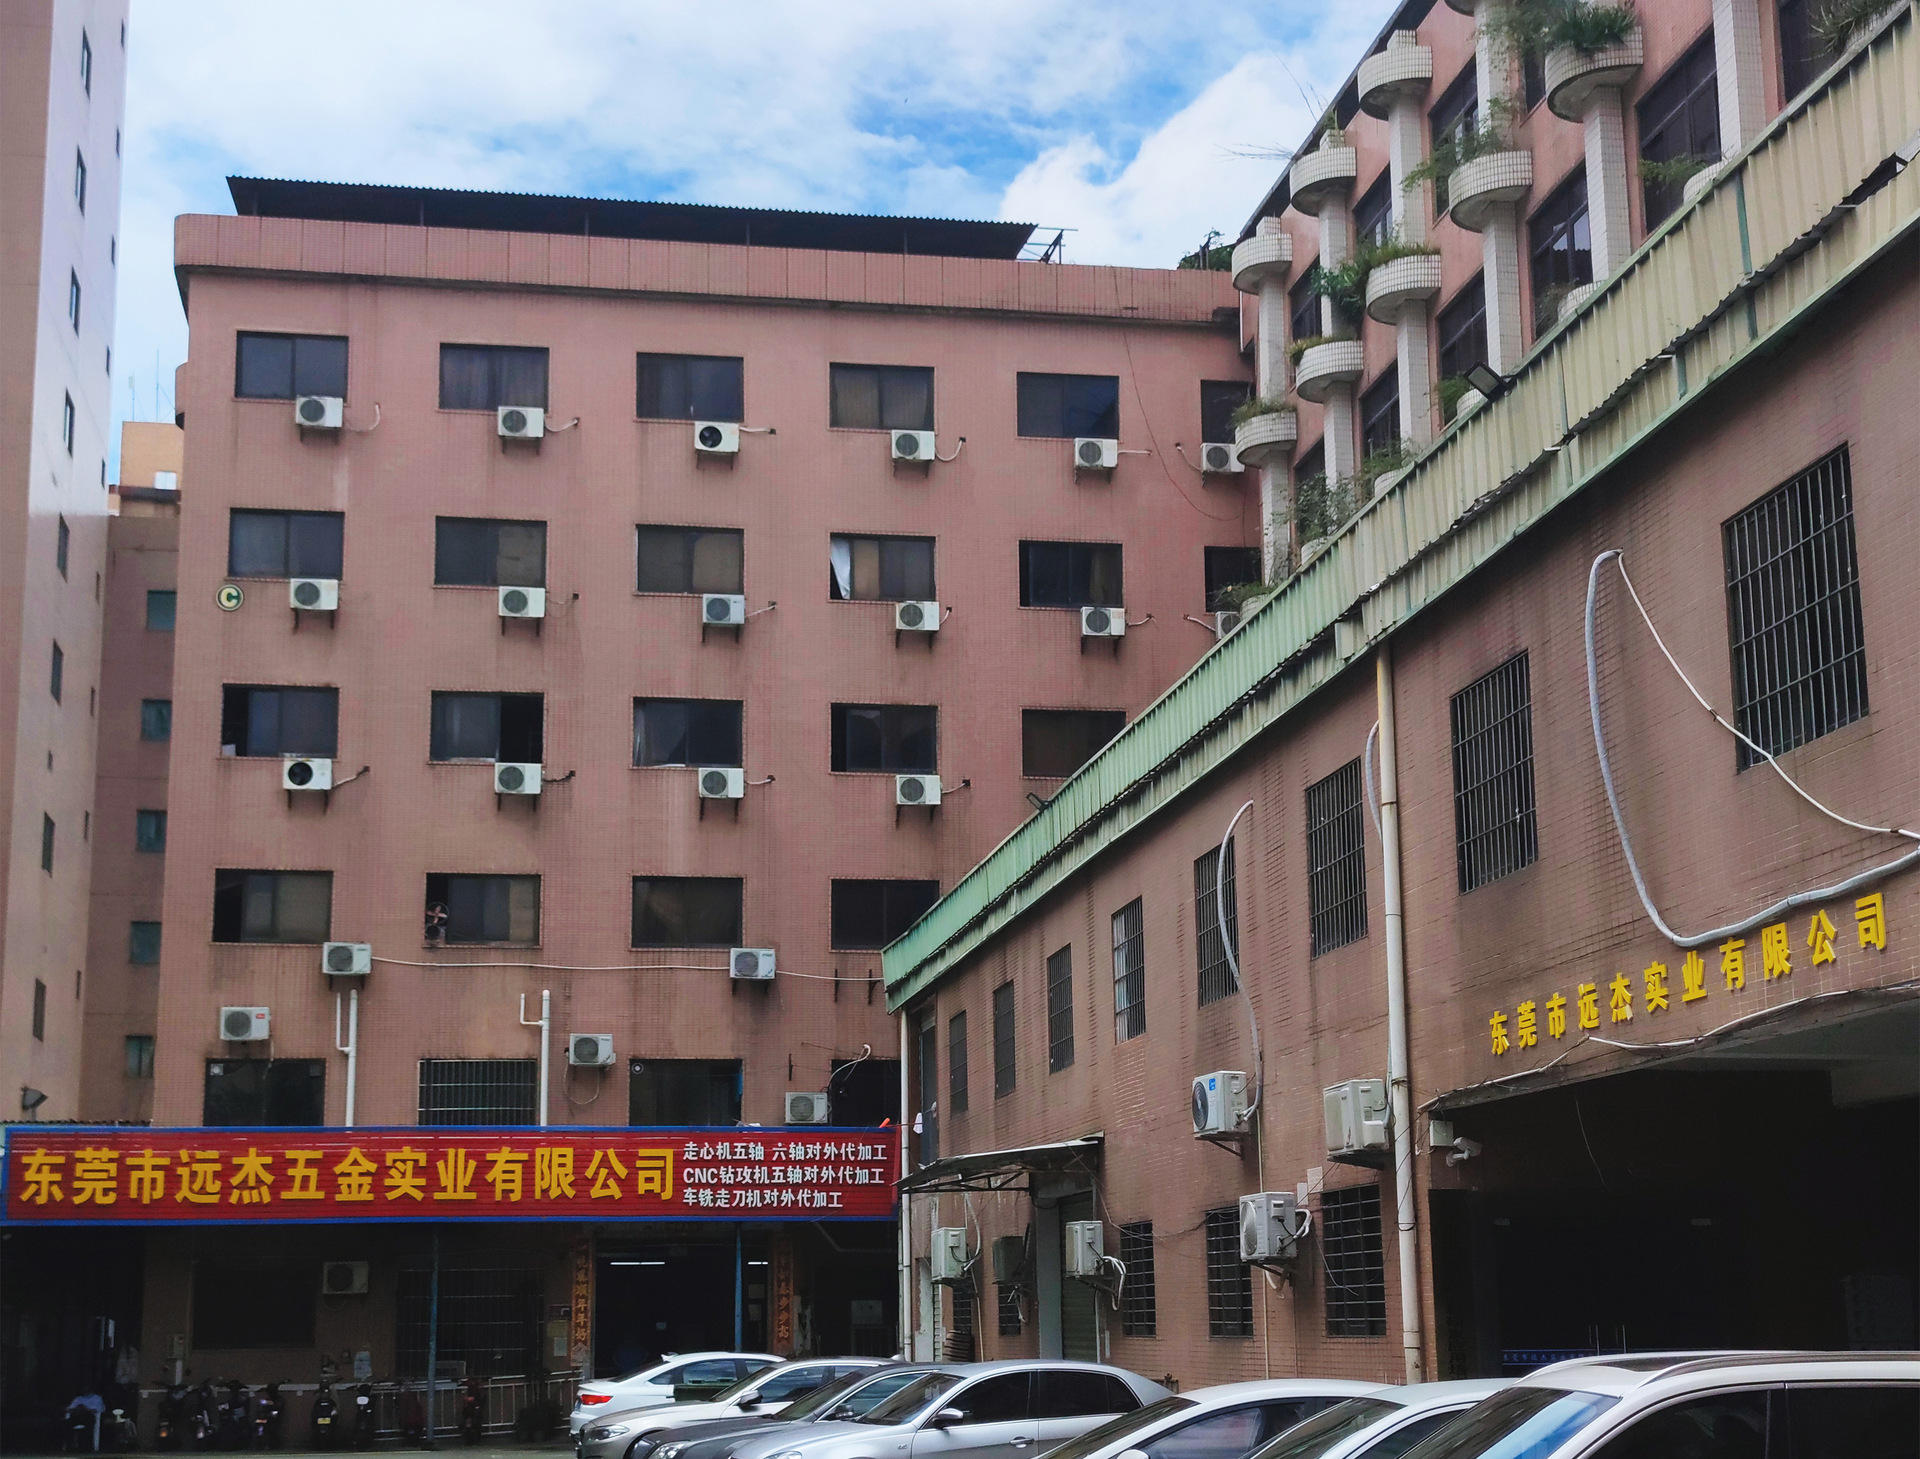   Dongguan Yuanjie Industrial Co., Ltd